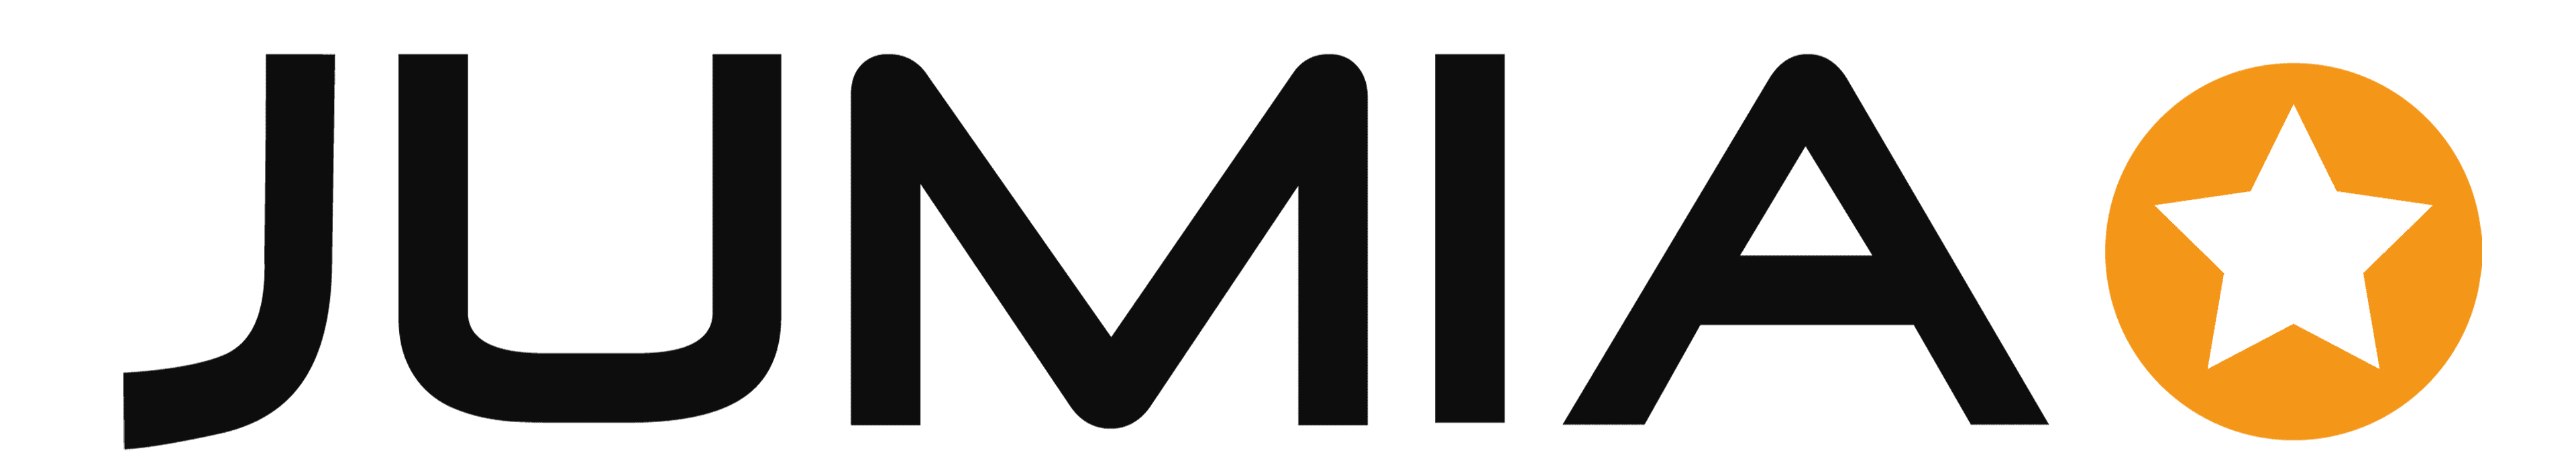 Jumia-Logo